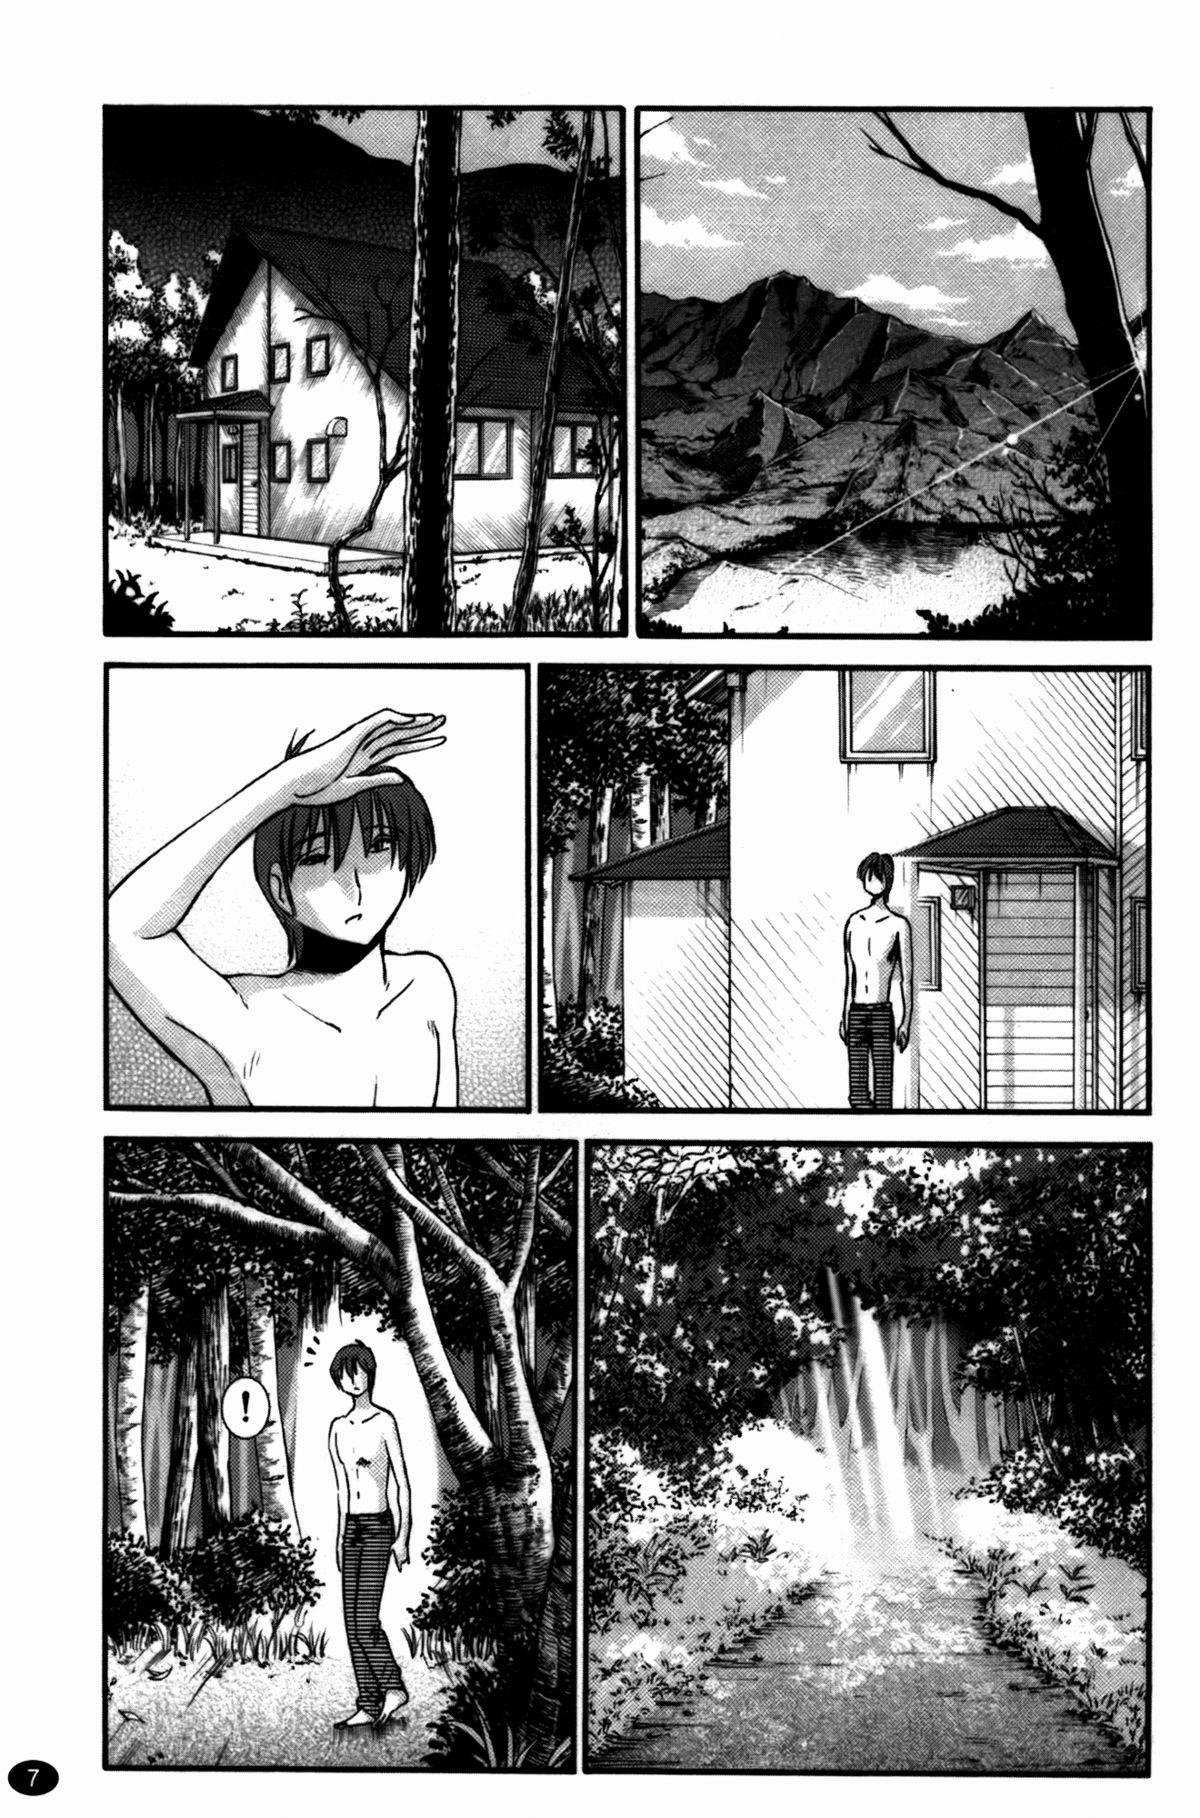 Self Monokage no Irisu Volume 3 Chapter 17 Fudendo - Page 8